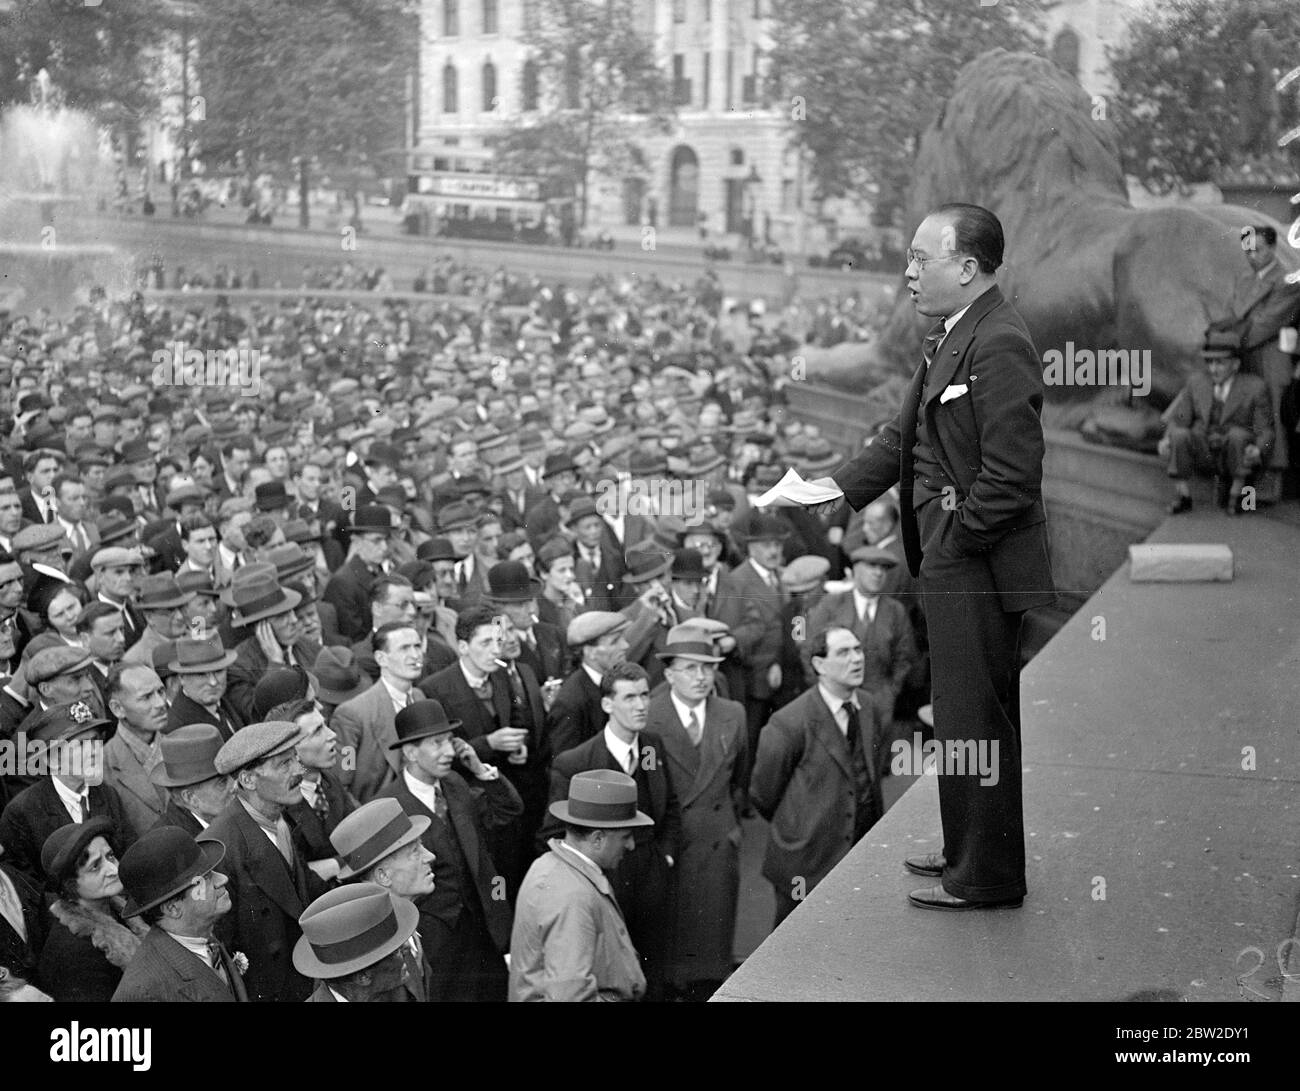 Molti cinesi sono stati tra i relatori sono membri della colonia cinese di Londra, che ha fatto parte del pubblico in una grande riunione di massa tenutasi a Trafalgar Square, Londra, per protestare contro gli attacchi giapponesi contro i civili in Cina. Lien, che ha fatto il suo vice per il generale Yang, intervenendo alla riunione di Trafalgar Square. 10 ottobre 1937. Foto Stock